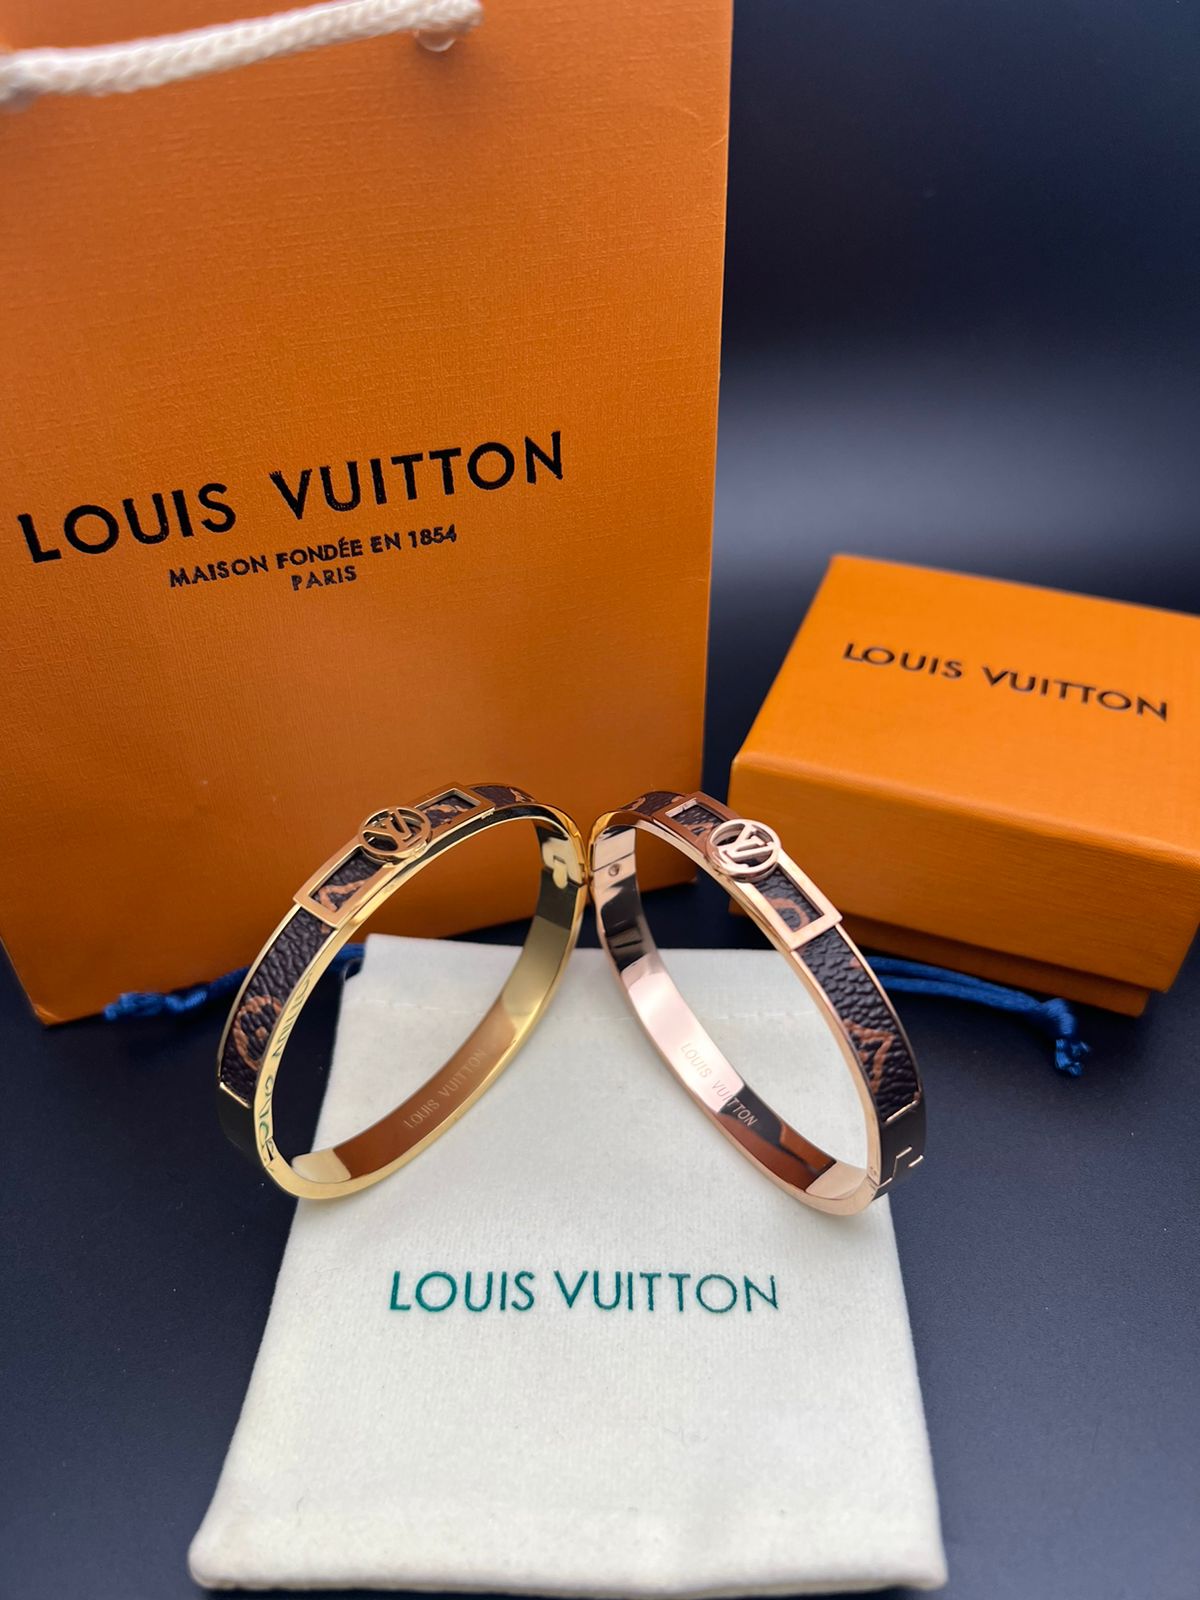 LUIS VUITTON BRACELETS - Sunglasses Villa